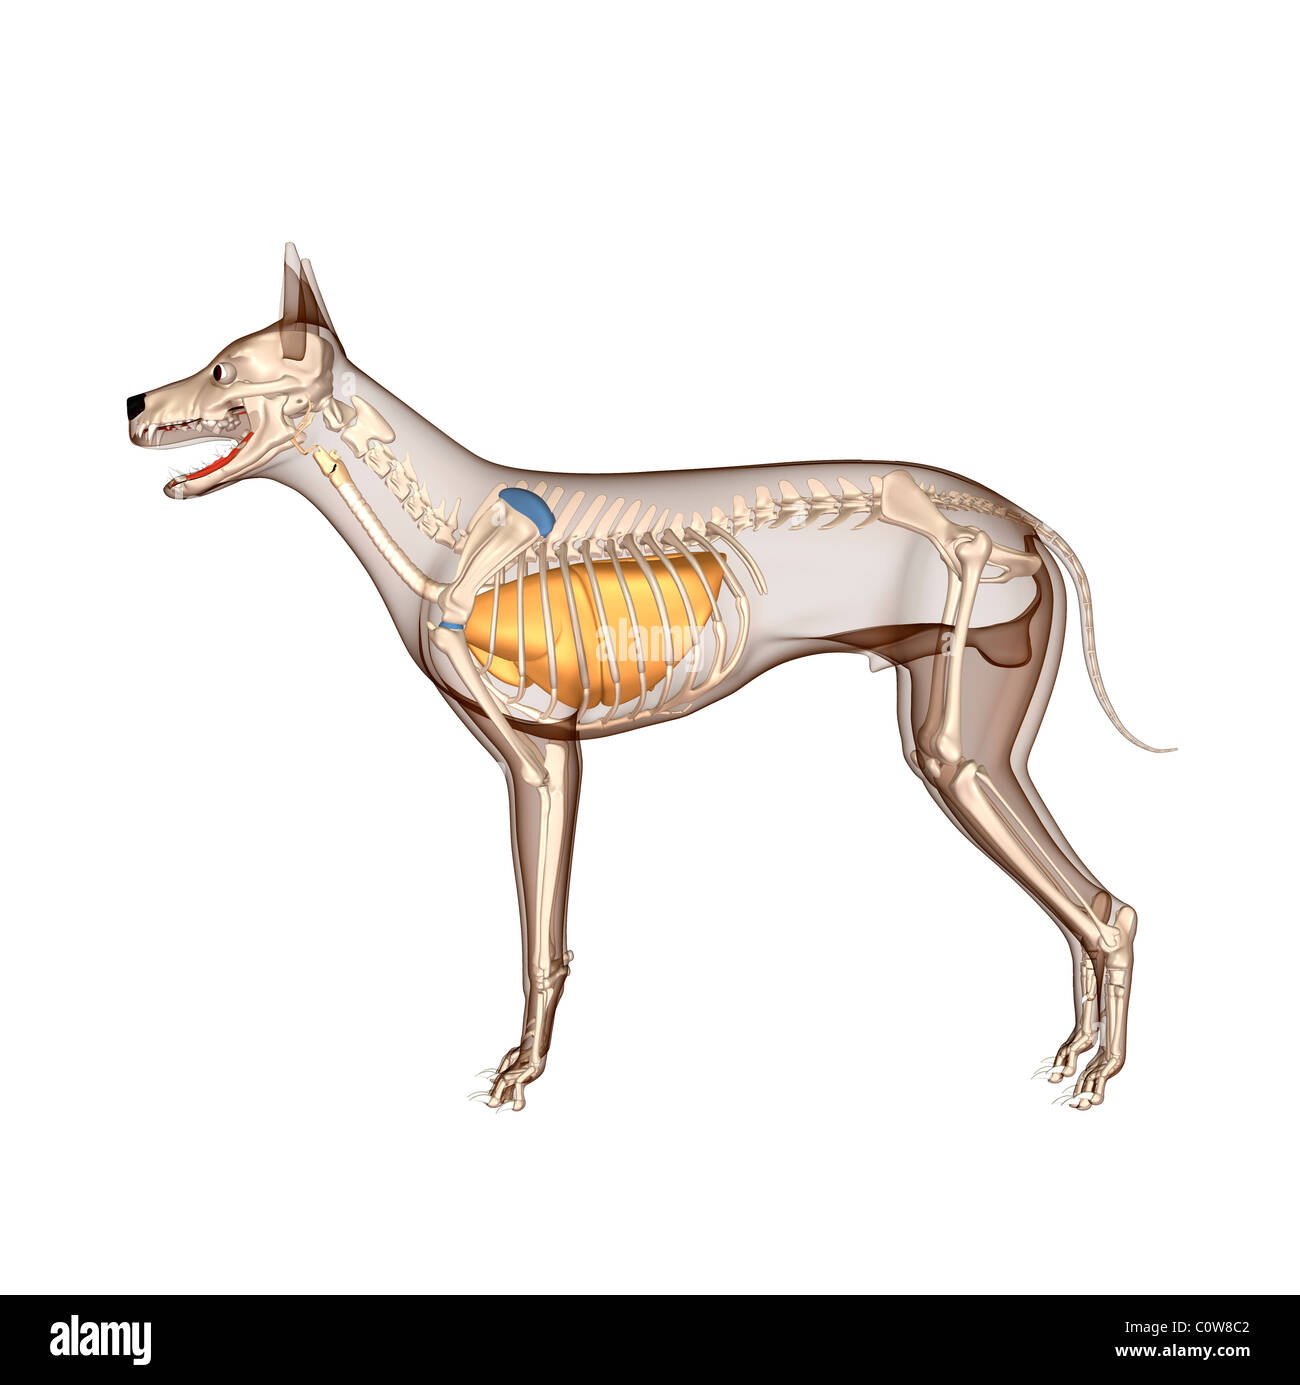 Hund Anatomie Atemwege Lunge Skelett mit durchsichtigen Körper  Stockfotografie - Alamy